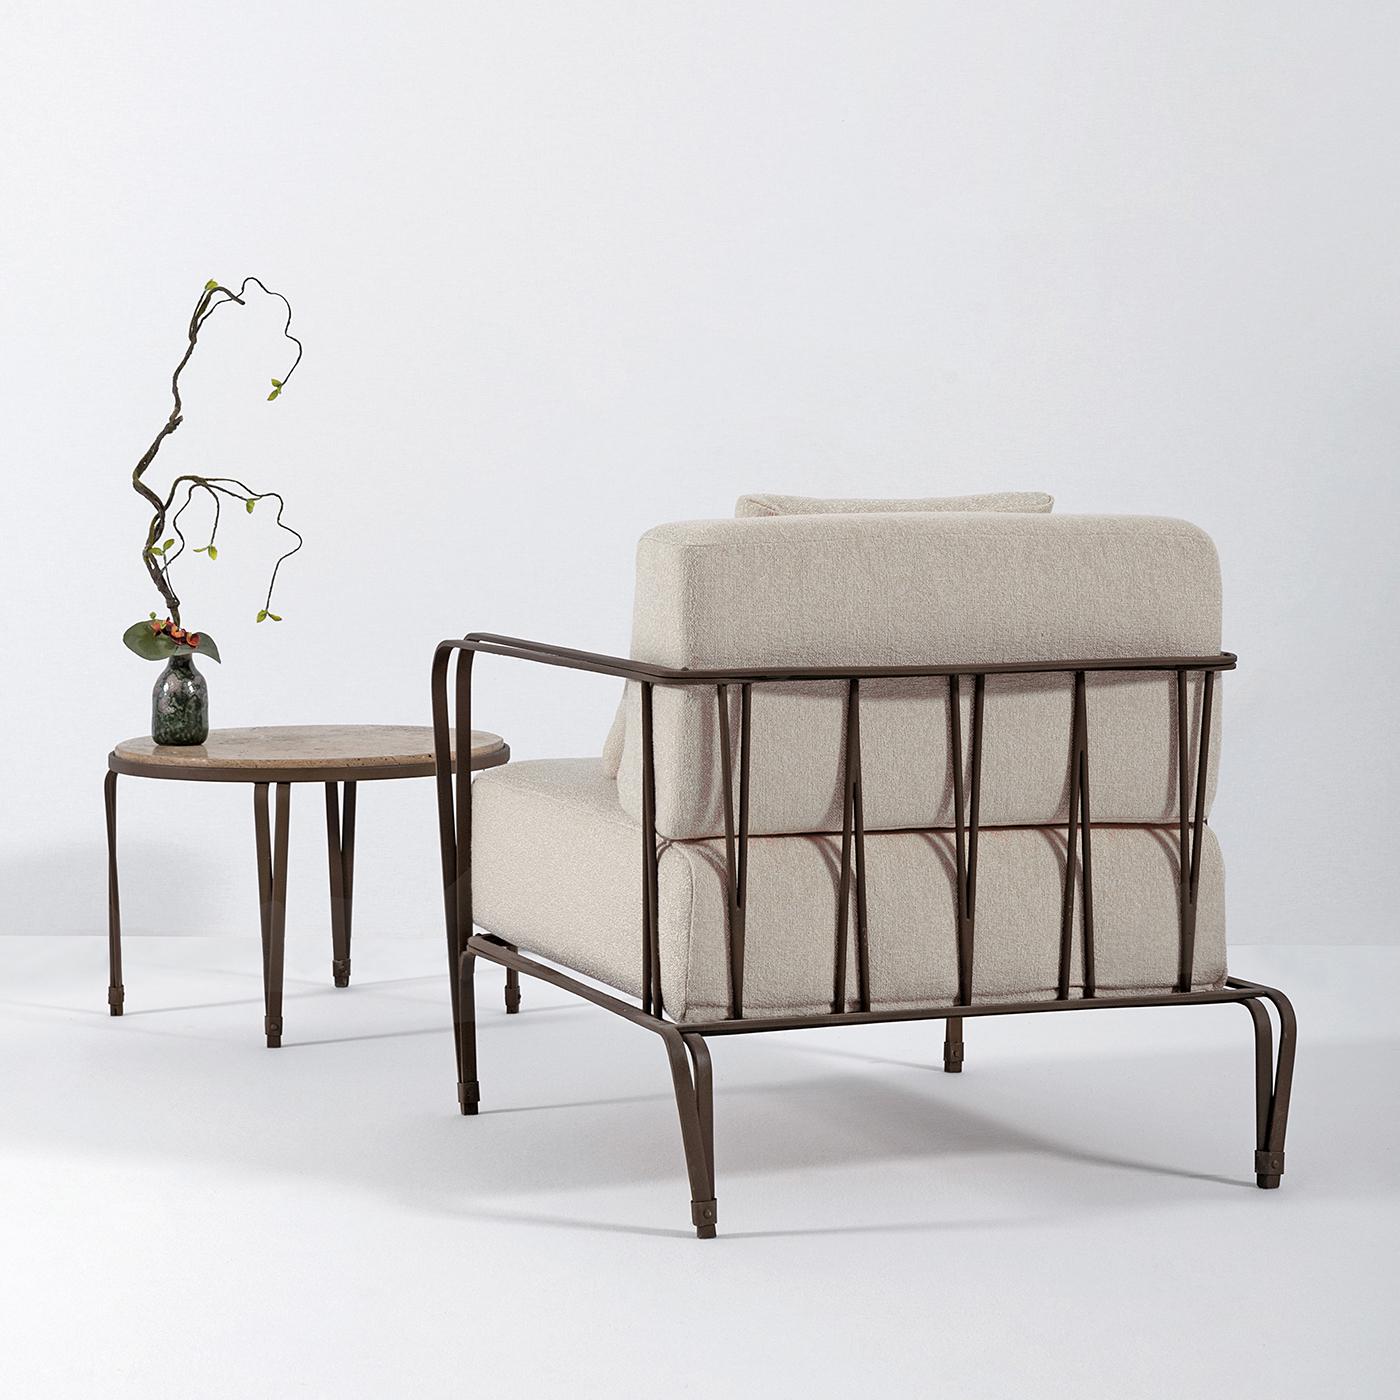 Le fauteuil Marina est fabriqué en acier inoxydable pour un look traditionnel, inspiré des designs florentins classiques. Spécialement conçue pour un usage extérieur, cette chaise est recouverte d'un tissu d'extérieur dans un joli ton blanc. Le